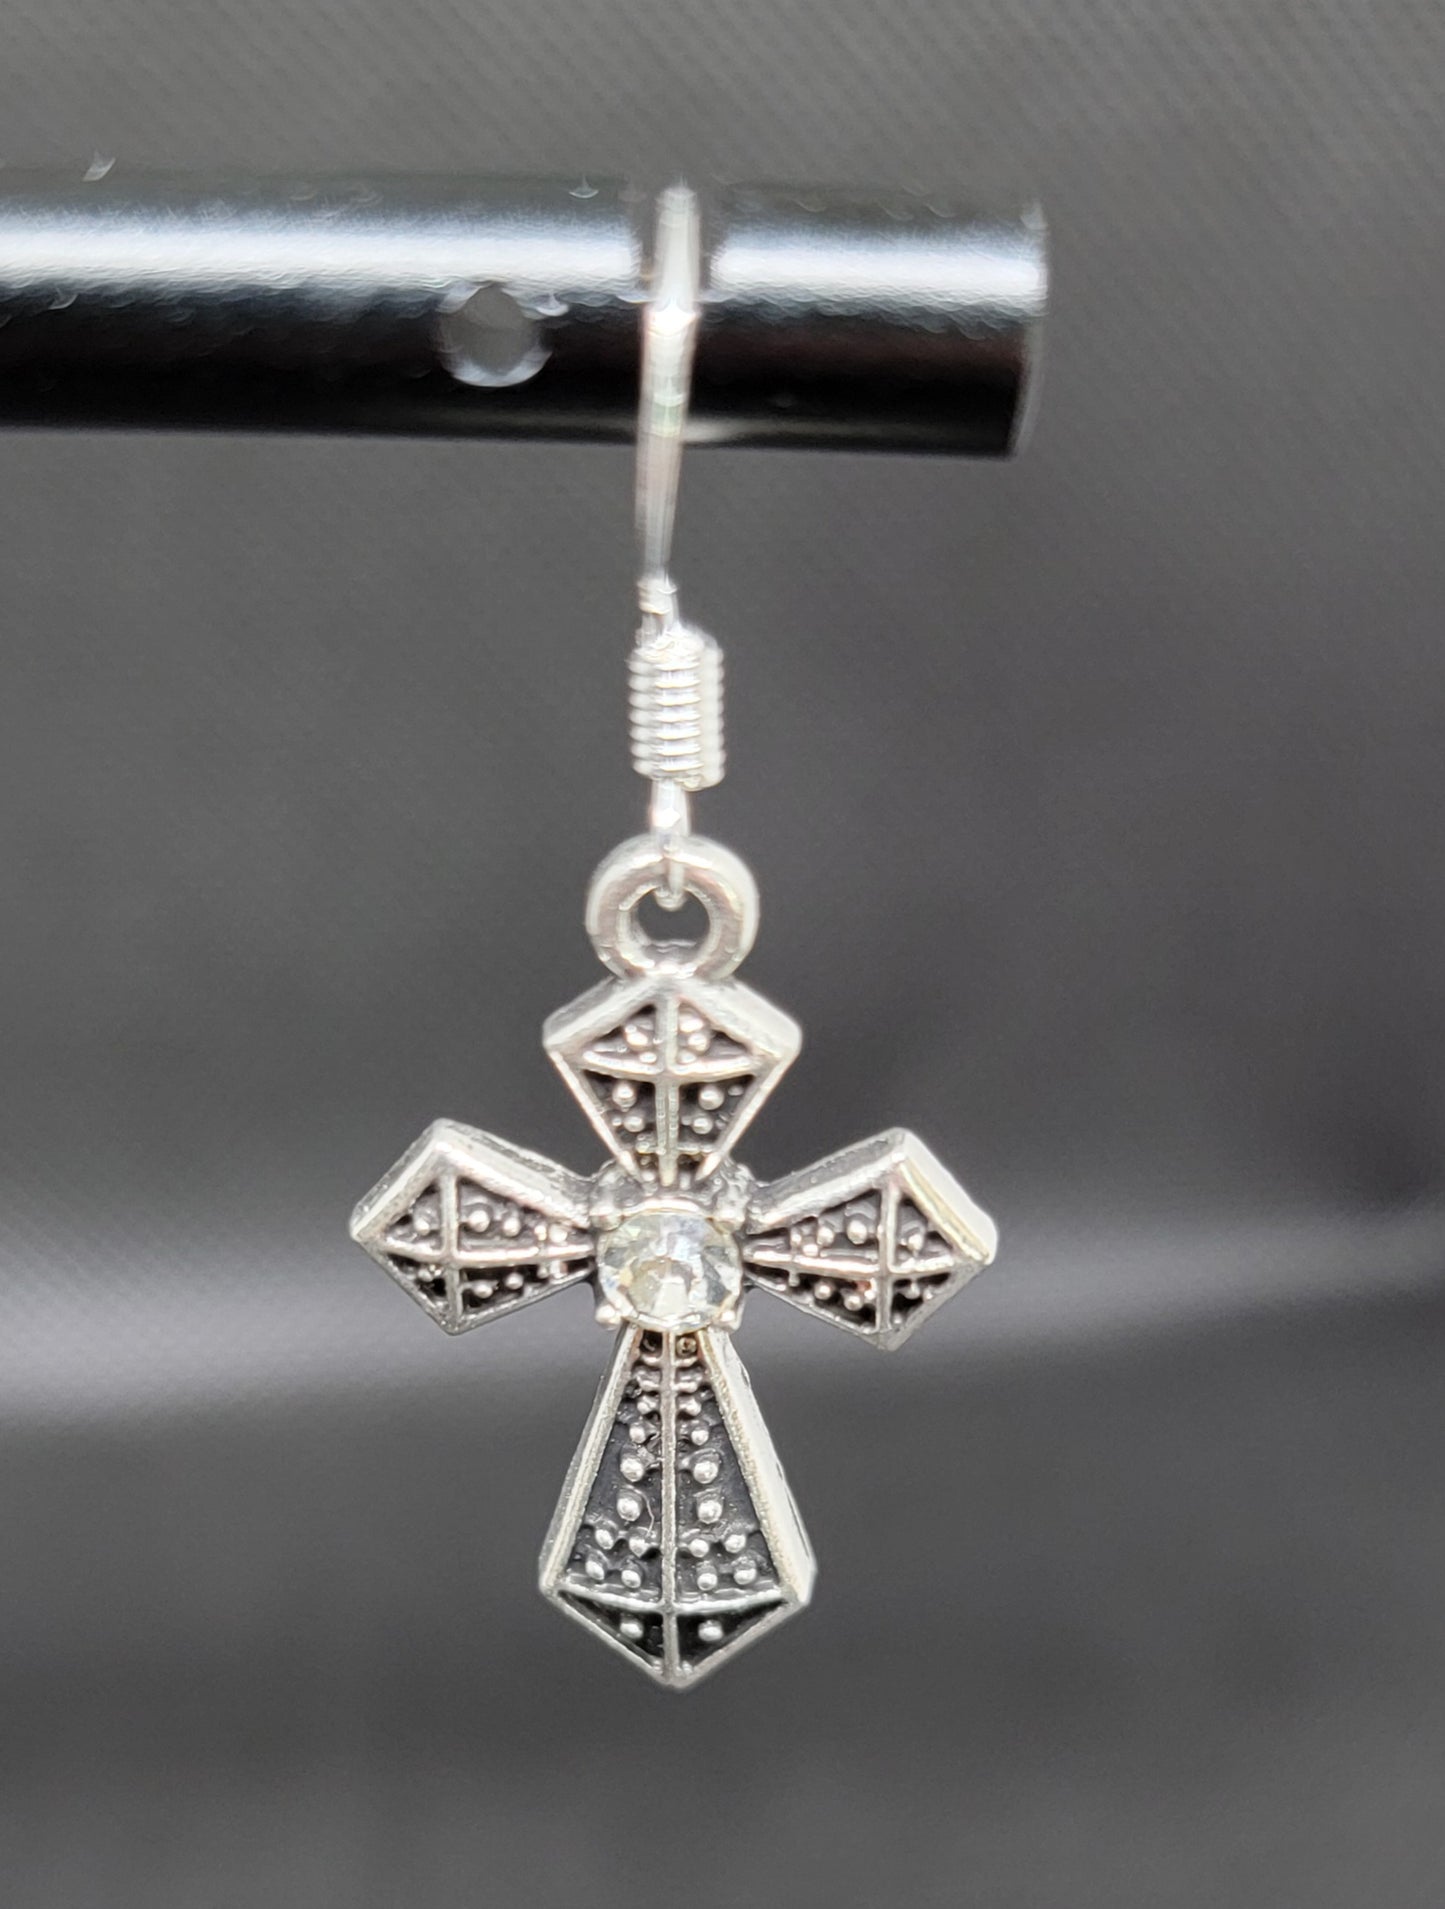 Silver cross earrings with single rhinestones